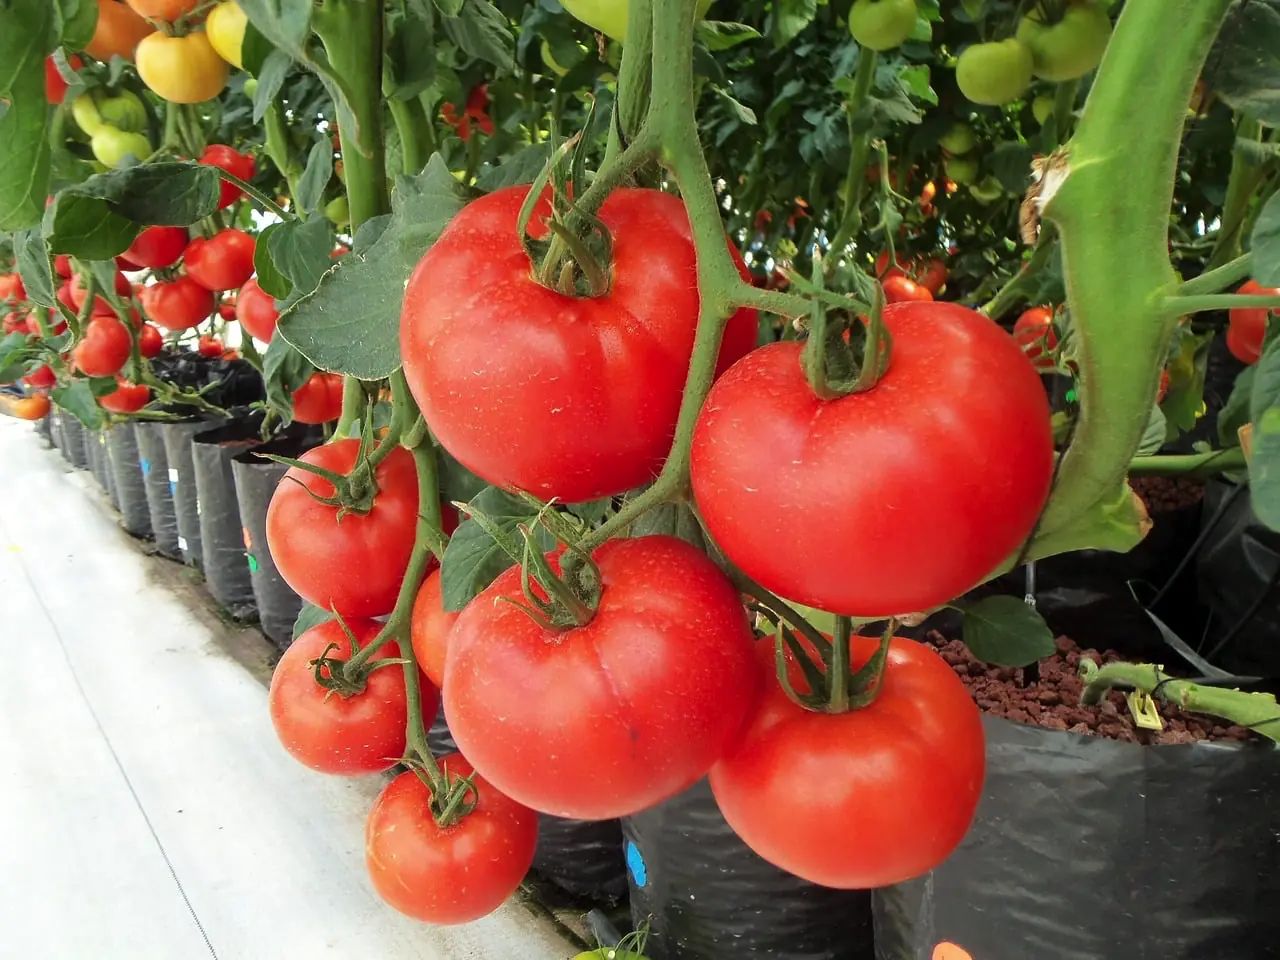 Wer es etwas größer möchte und schon Erfahrung gesammelt hat kann sich an Tomaten wagen. Hydroponisch angebaut wachsen sie besonders stark und sind sehr ertragreich. Durch den zusätzlichen Wachstums-Schub kann die Pflanze auch trainiert werden innerhalb der Saison.